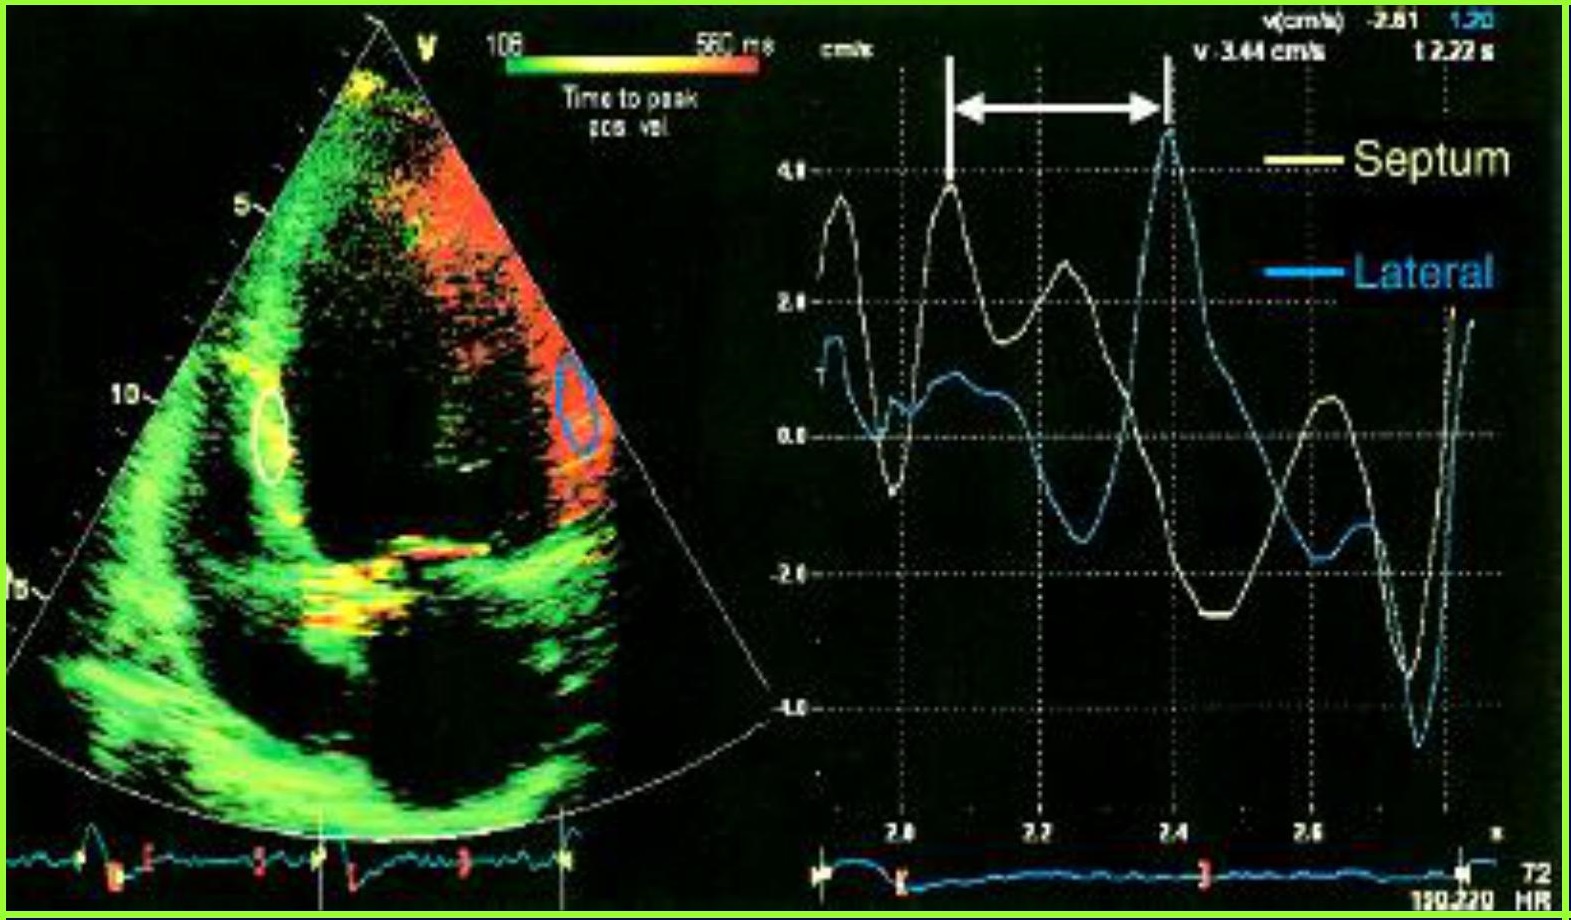 [Hội nghị tim mạch VIII] Siêu âm Doppler tim đánh giá chức năng tâm thu thất trái – Bs. Nguyễn Tuấn Hải viện tim Bạch Mai